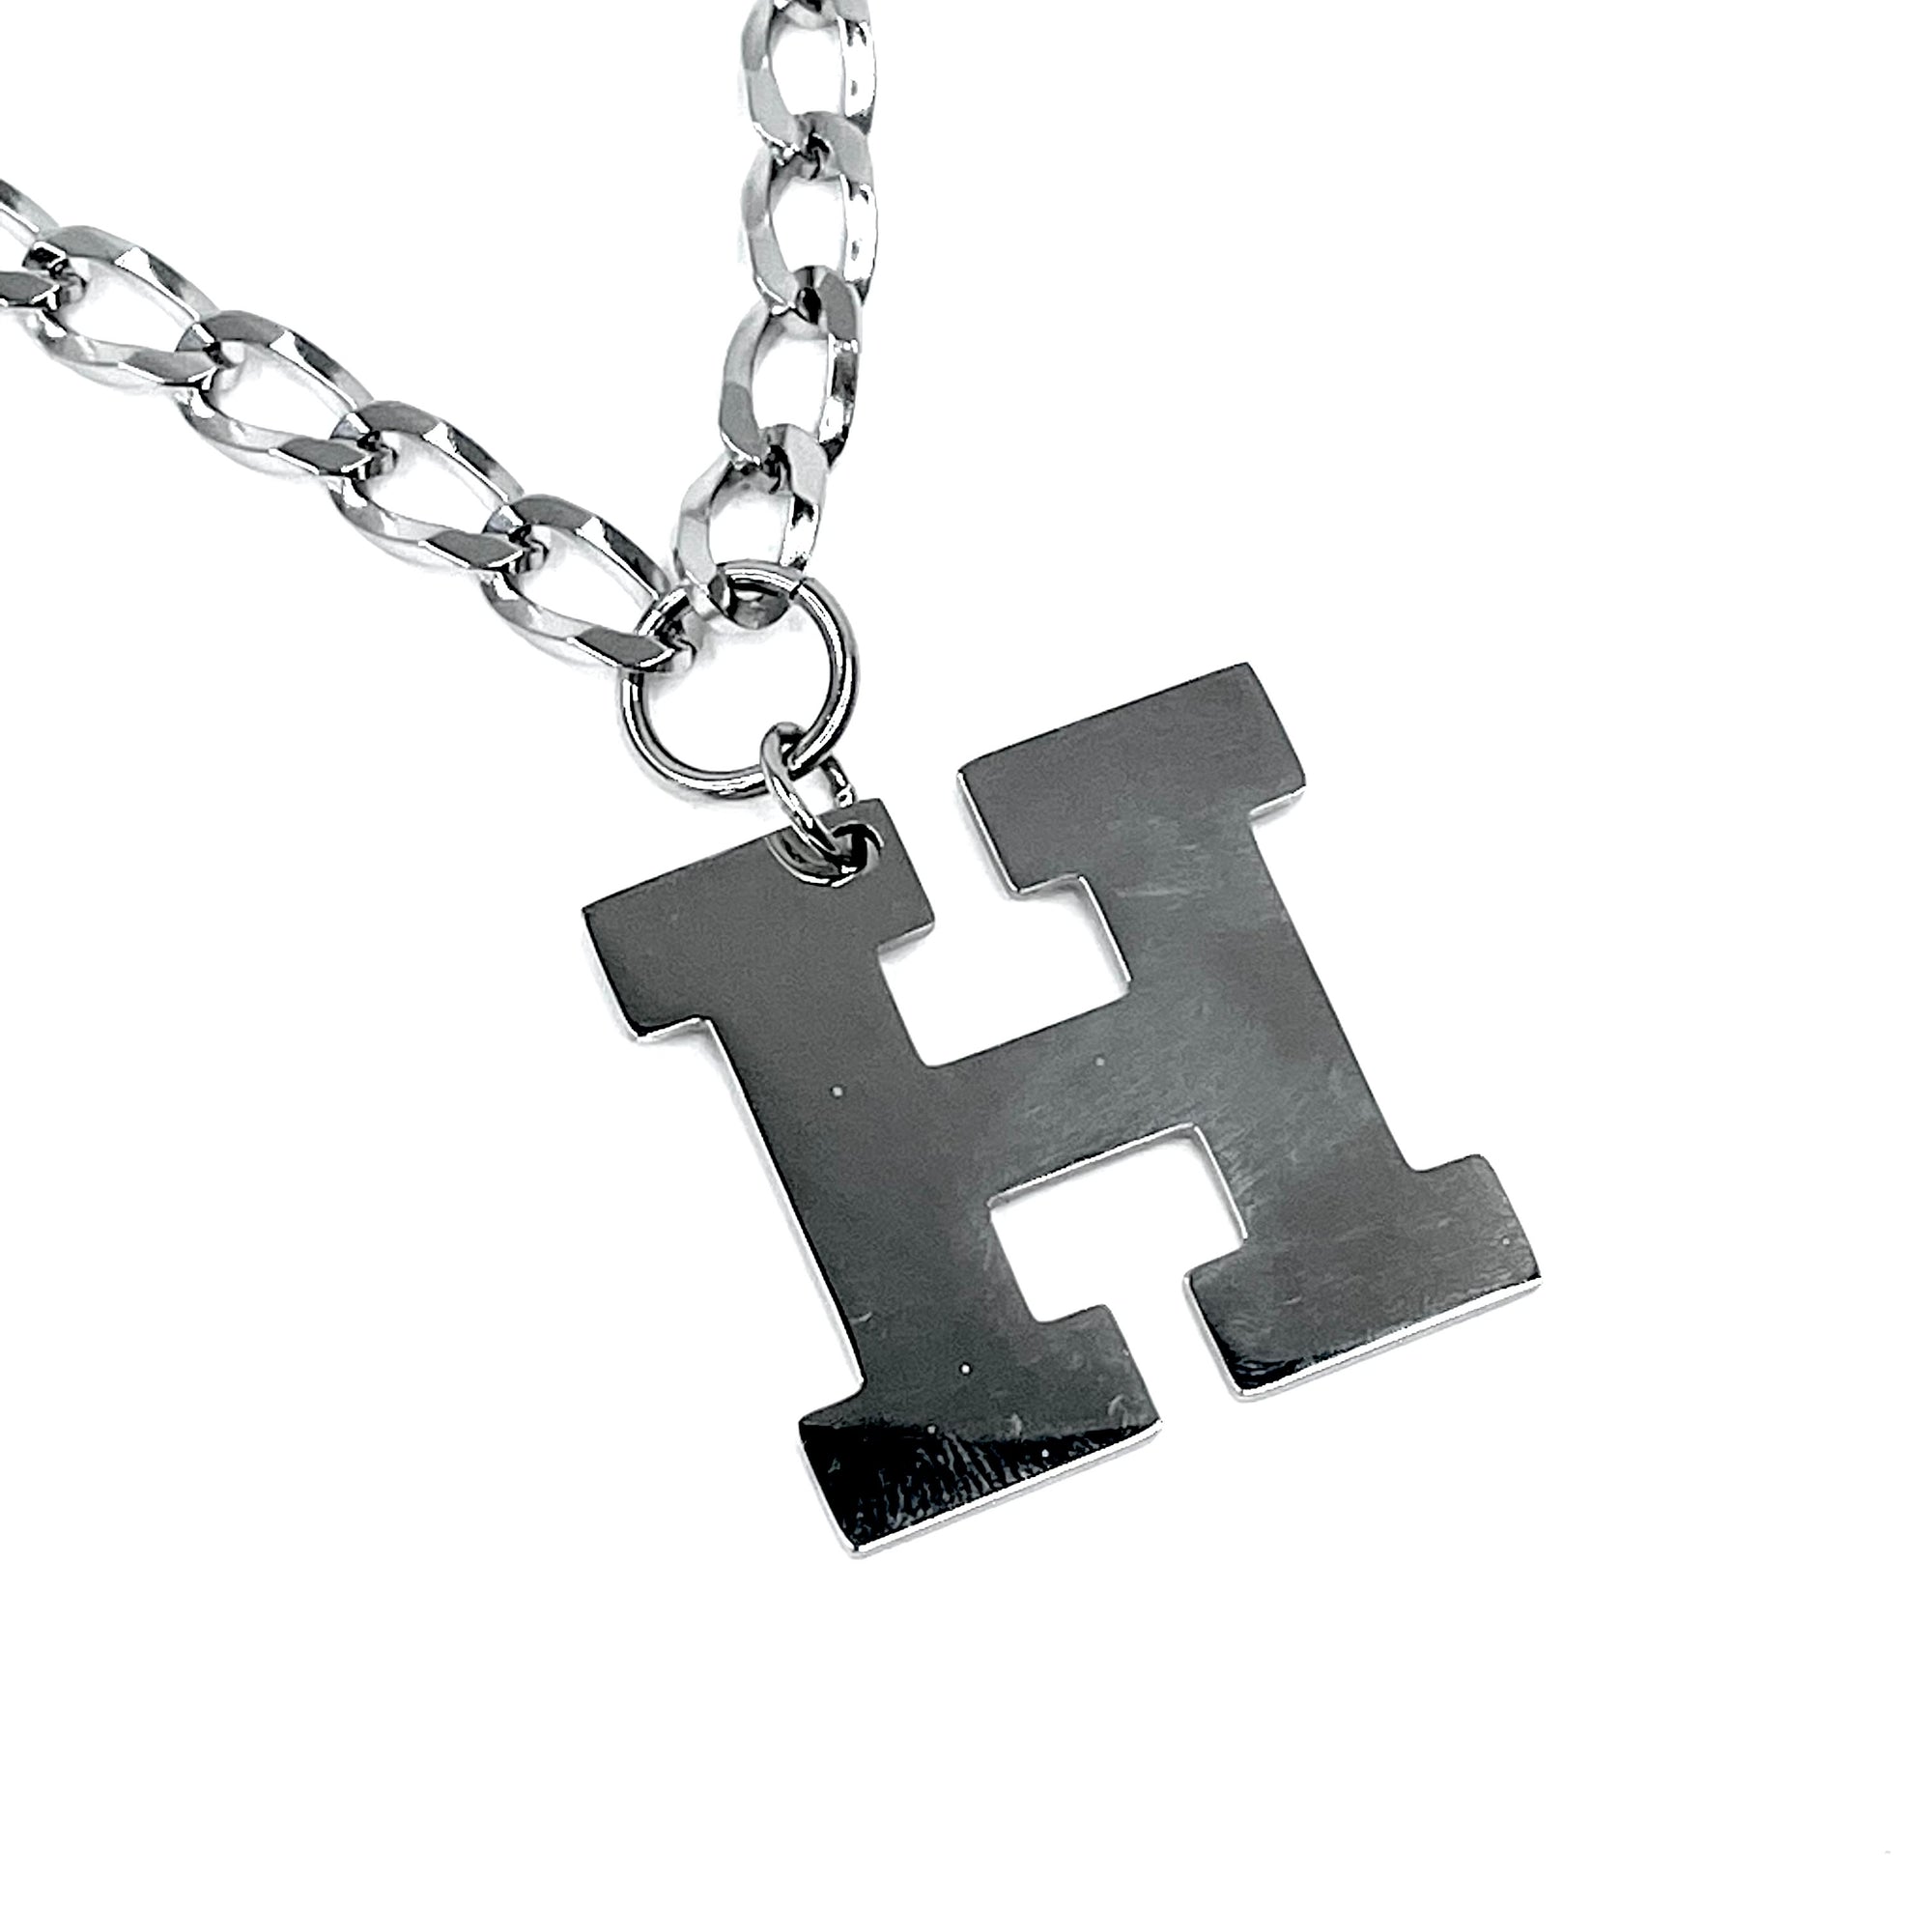 Lettering Legend Necklace Necklaces Cerese D, Inc. Silver H 